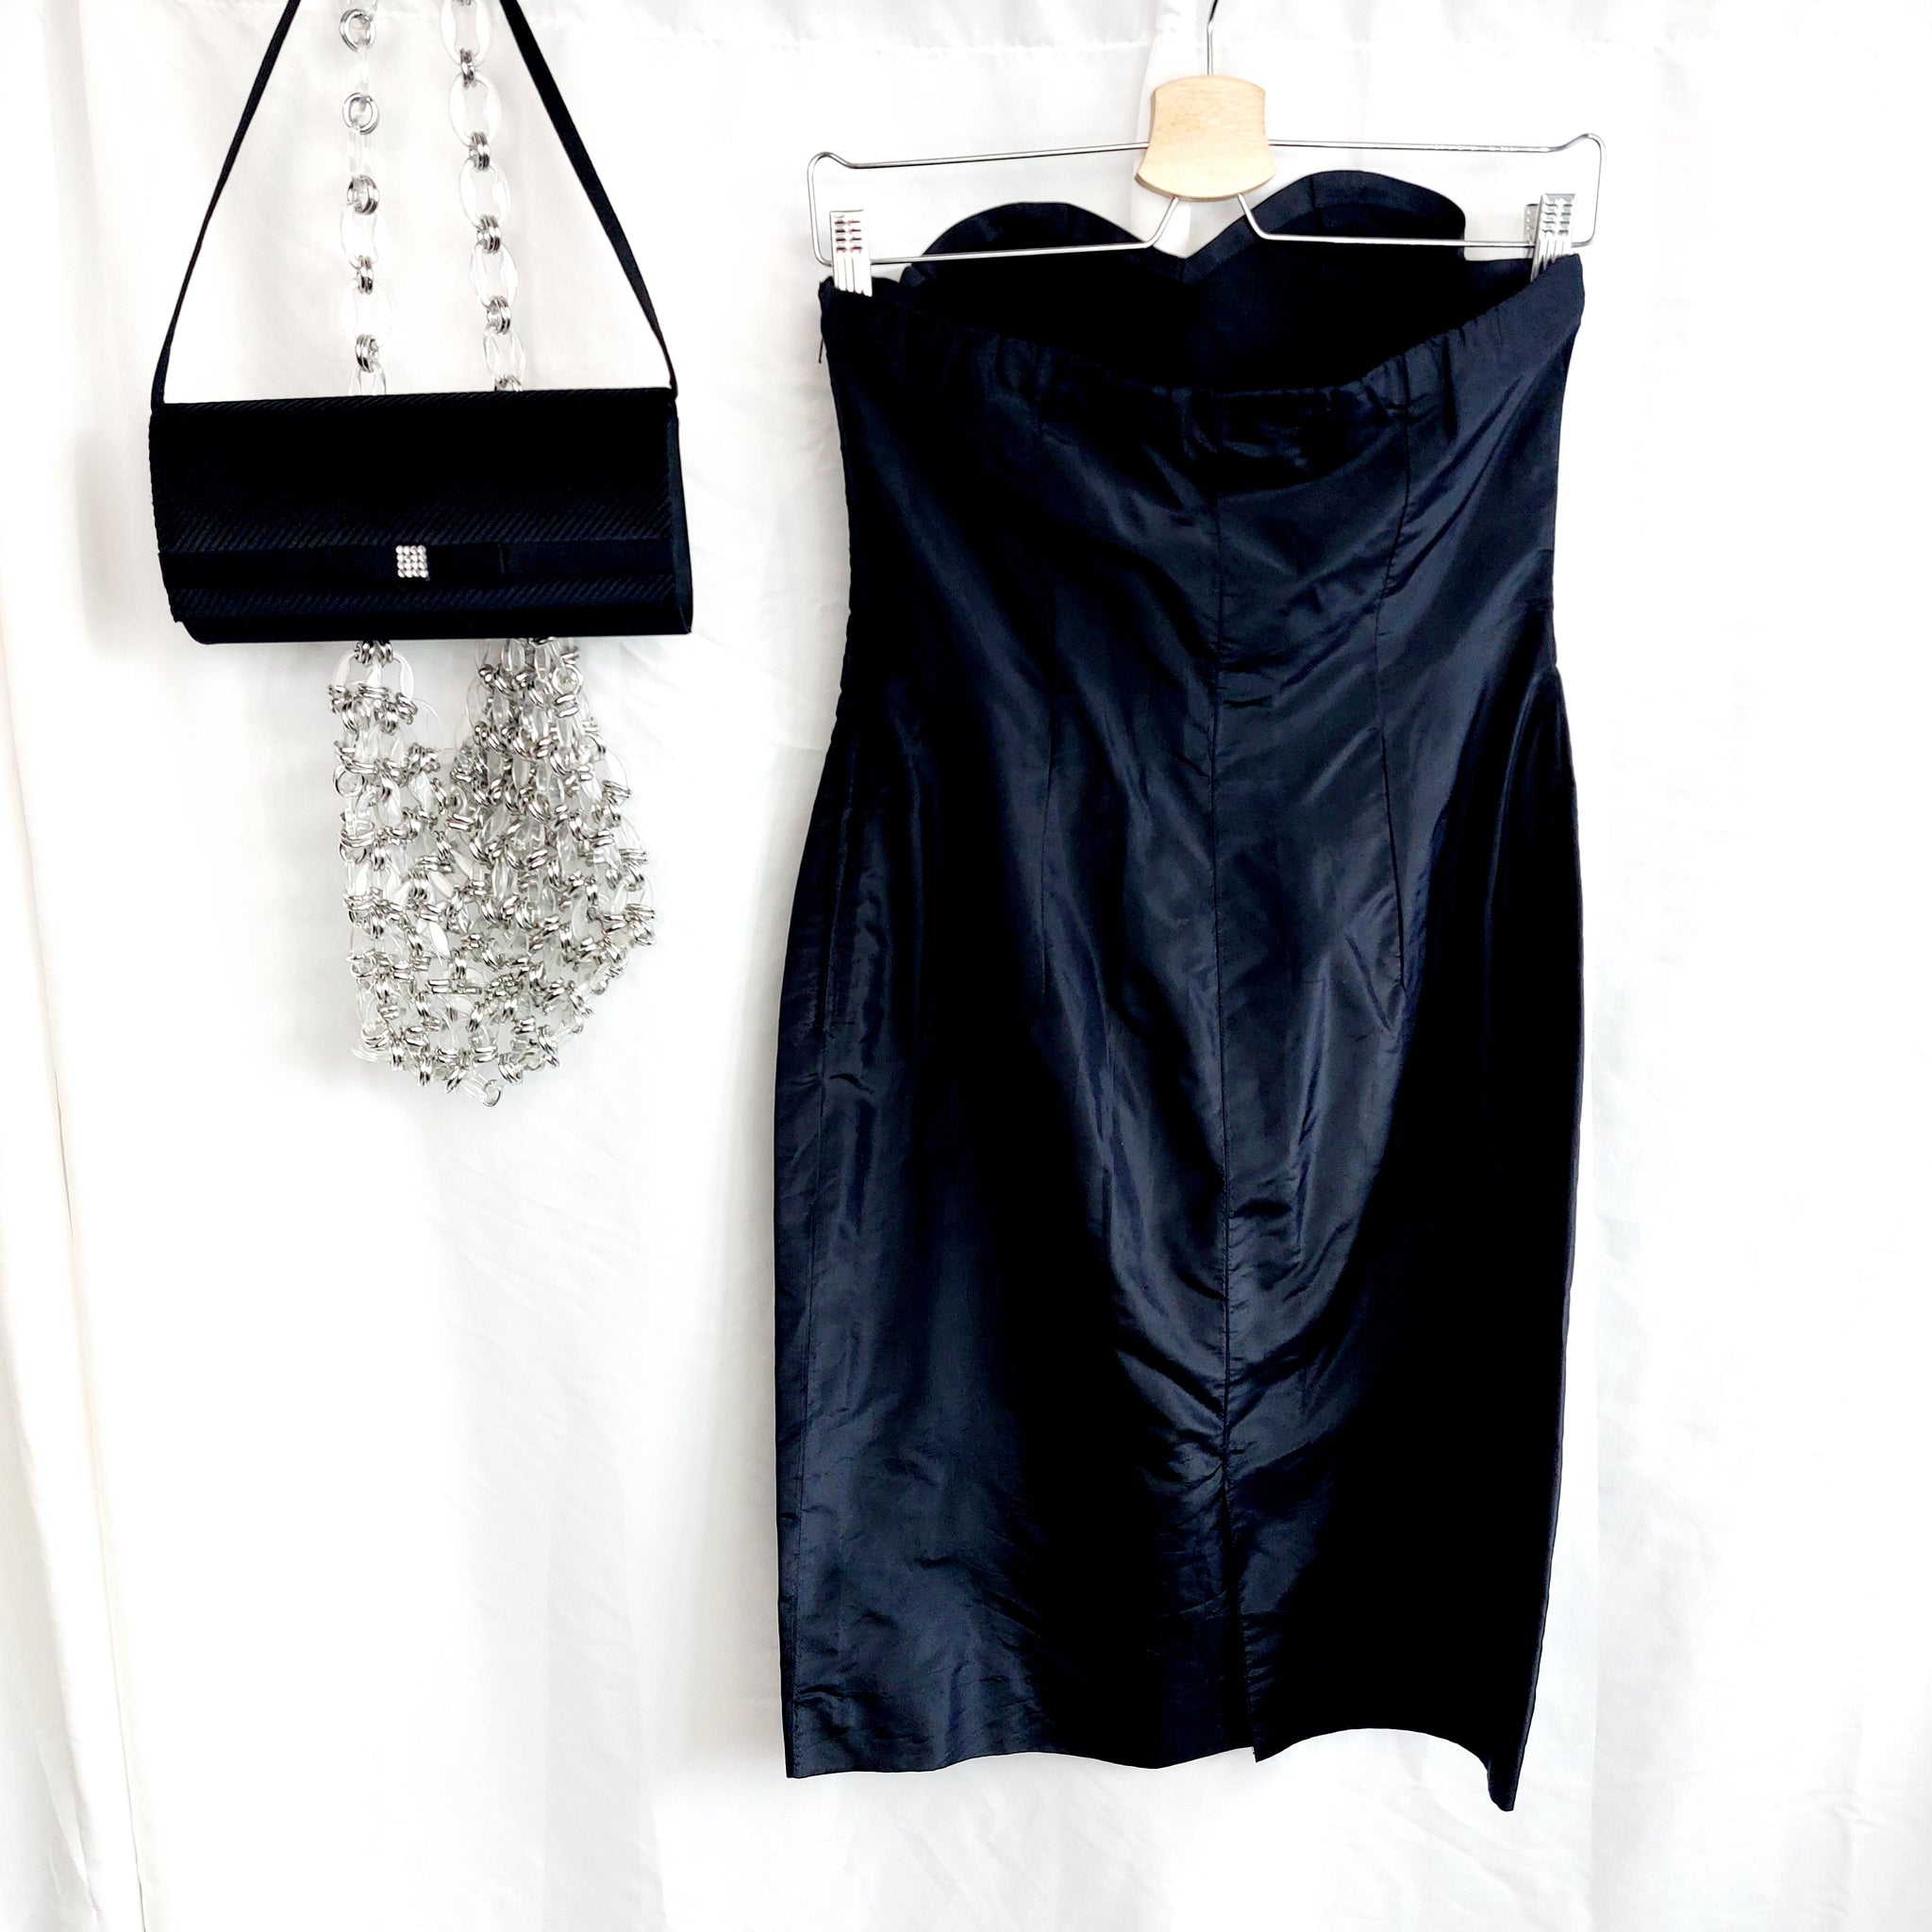 VINTAGE BLACK STRAPLESS DRESS- UK12